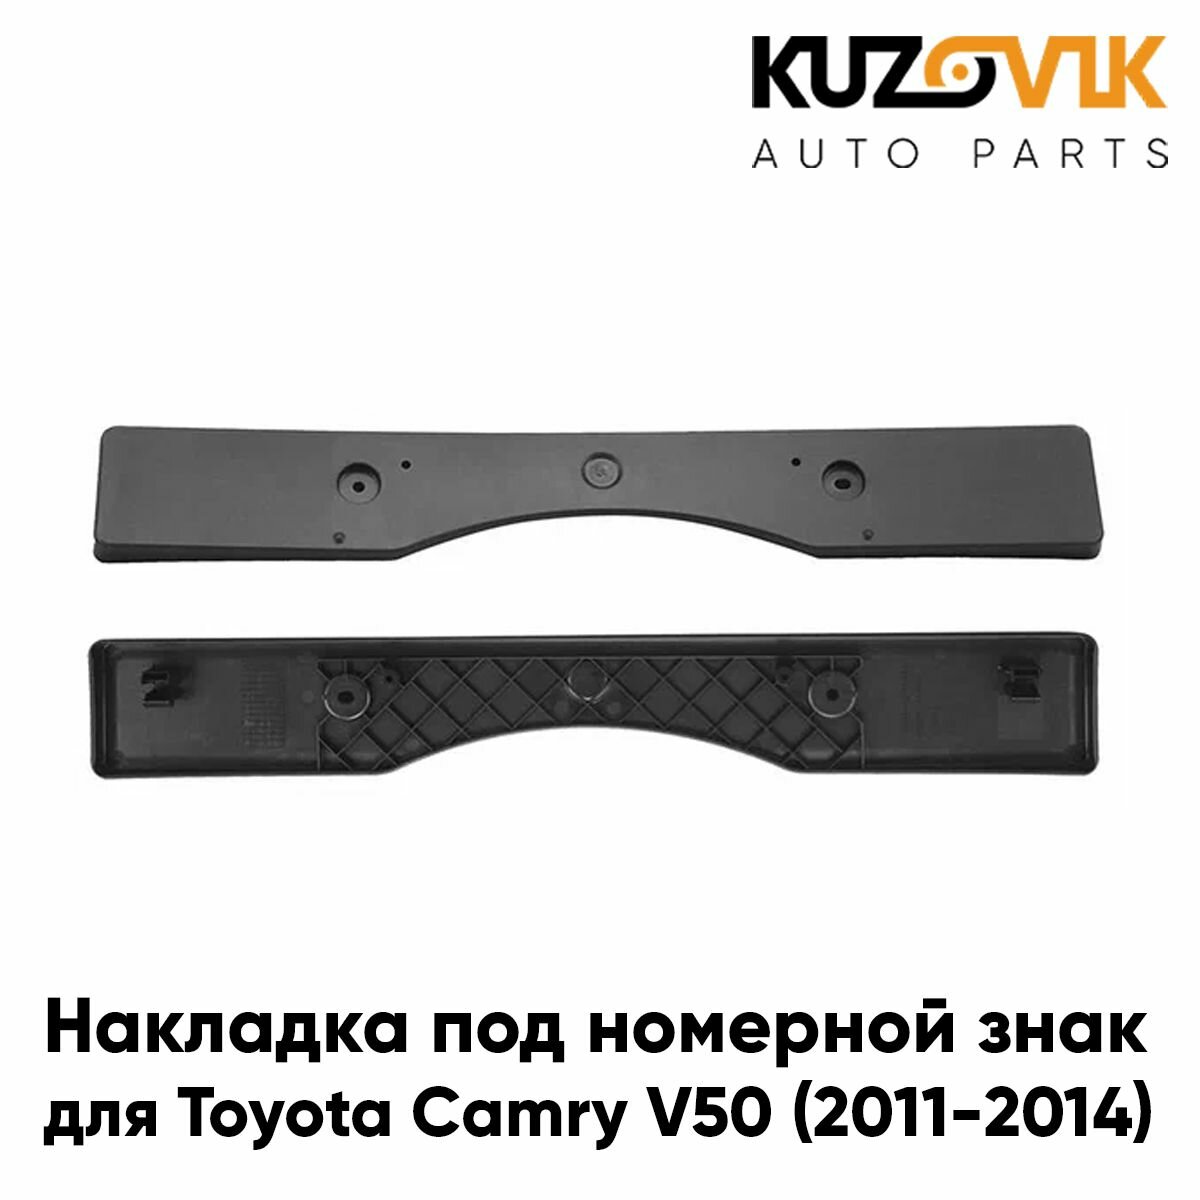 Накладка переднего бампера под номерной знак для Тойота Камри Toyota Camry V50 (2011-2014)